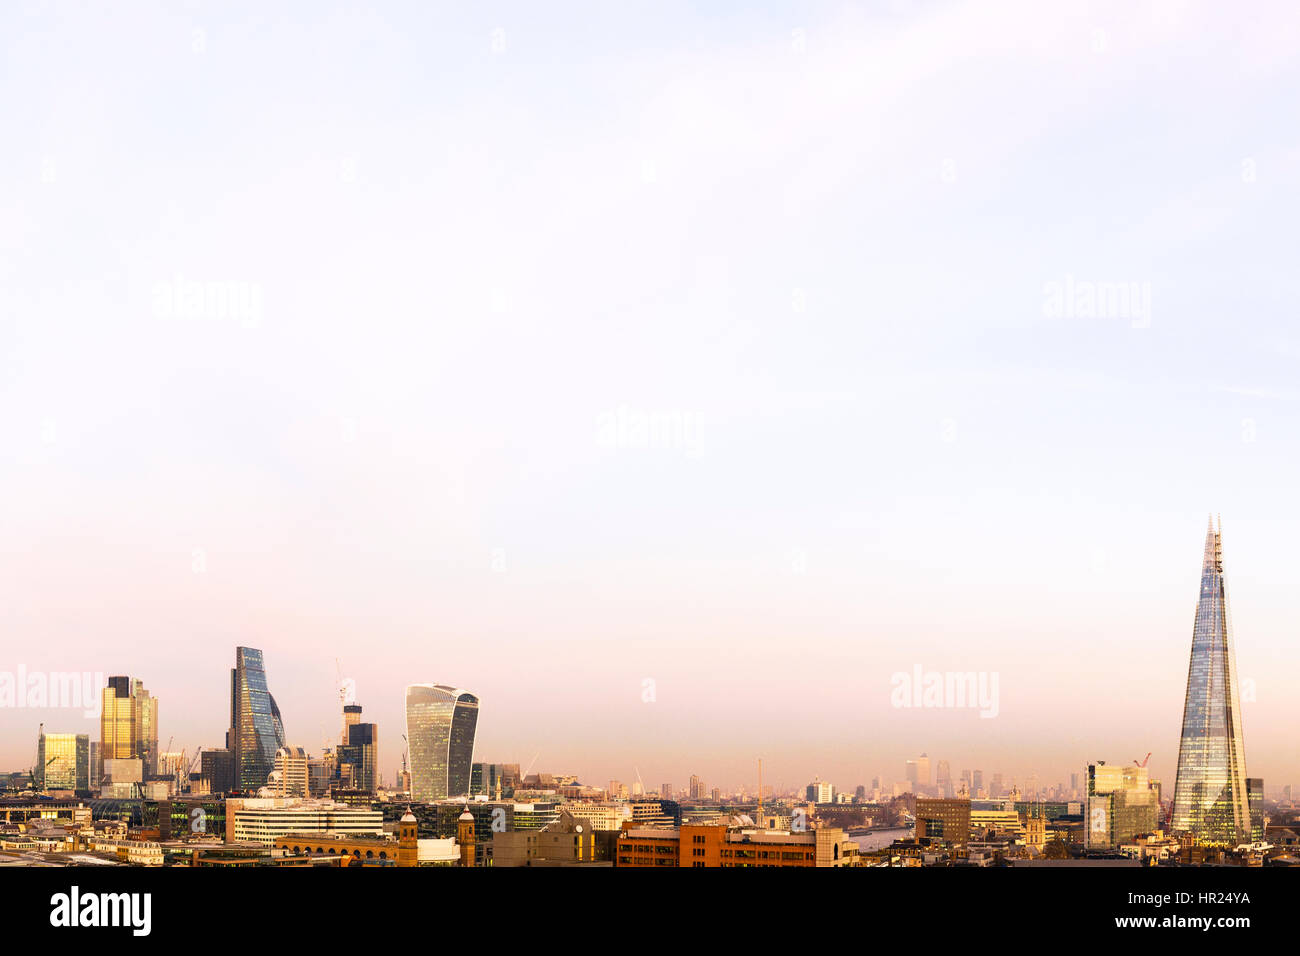 Reino Unido, Londres, Alta Vista en ángulo sobre el horizonte de la ciudad con vista de la Shard y el distrito financiero. Foto de stock